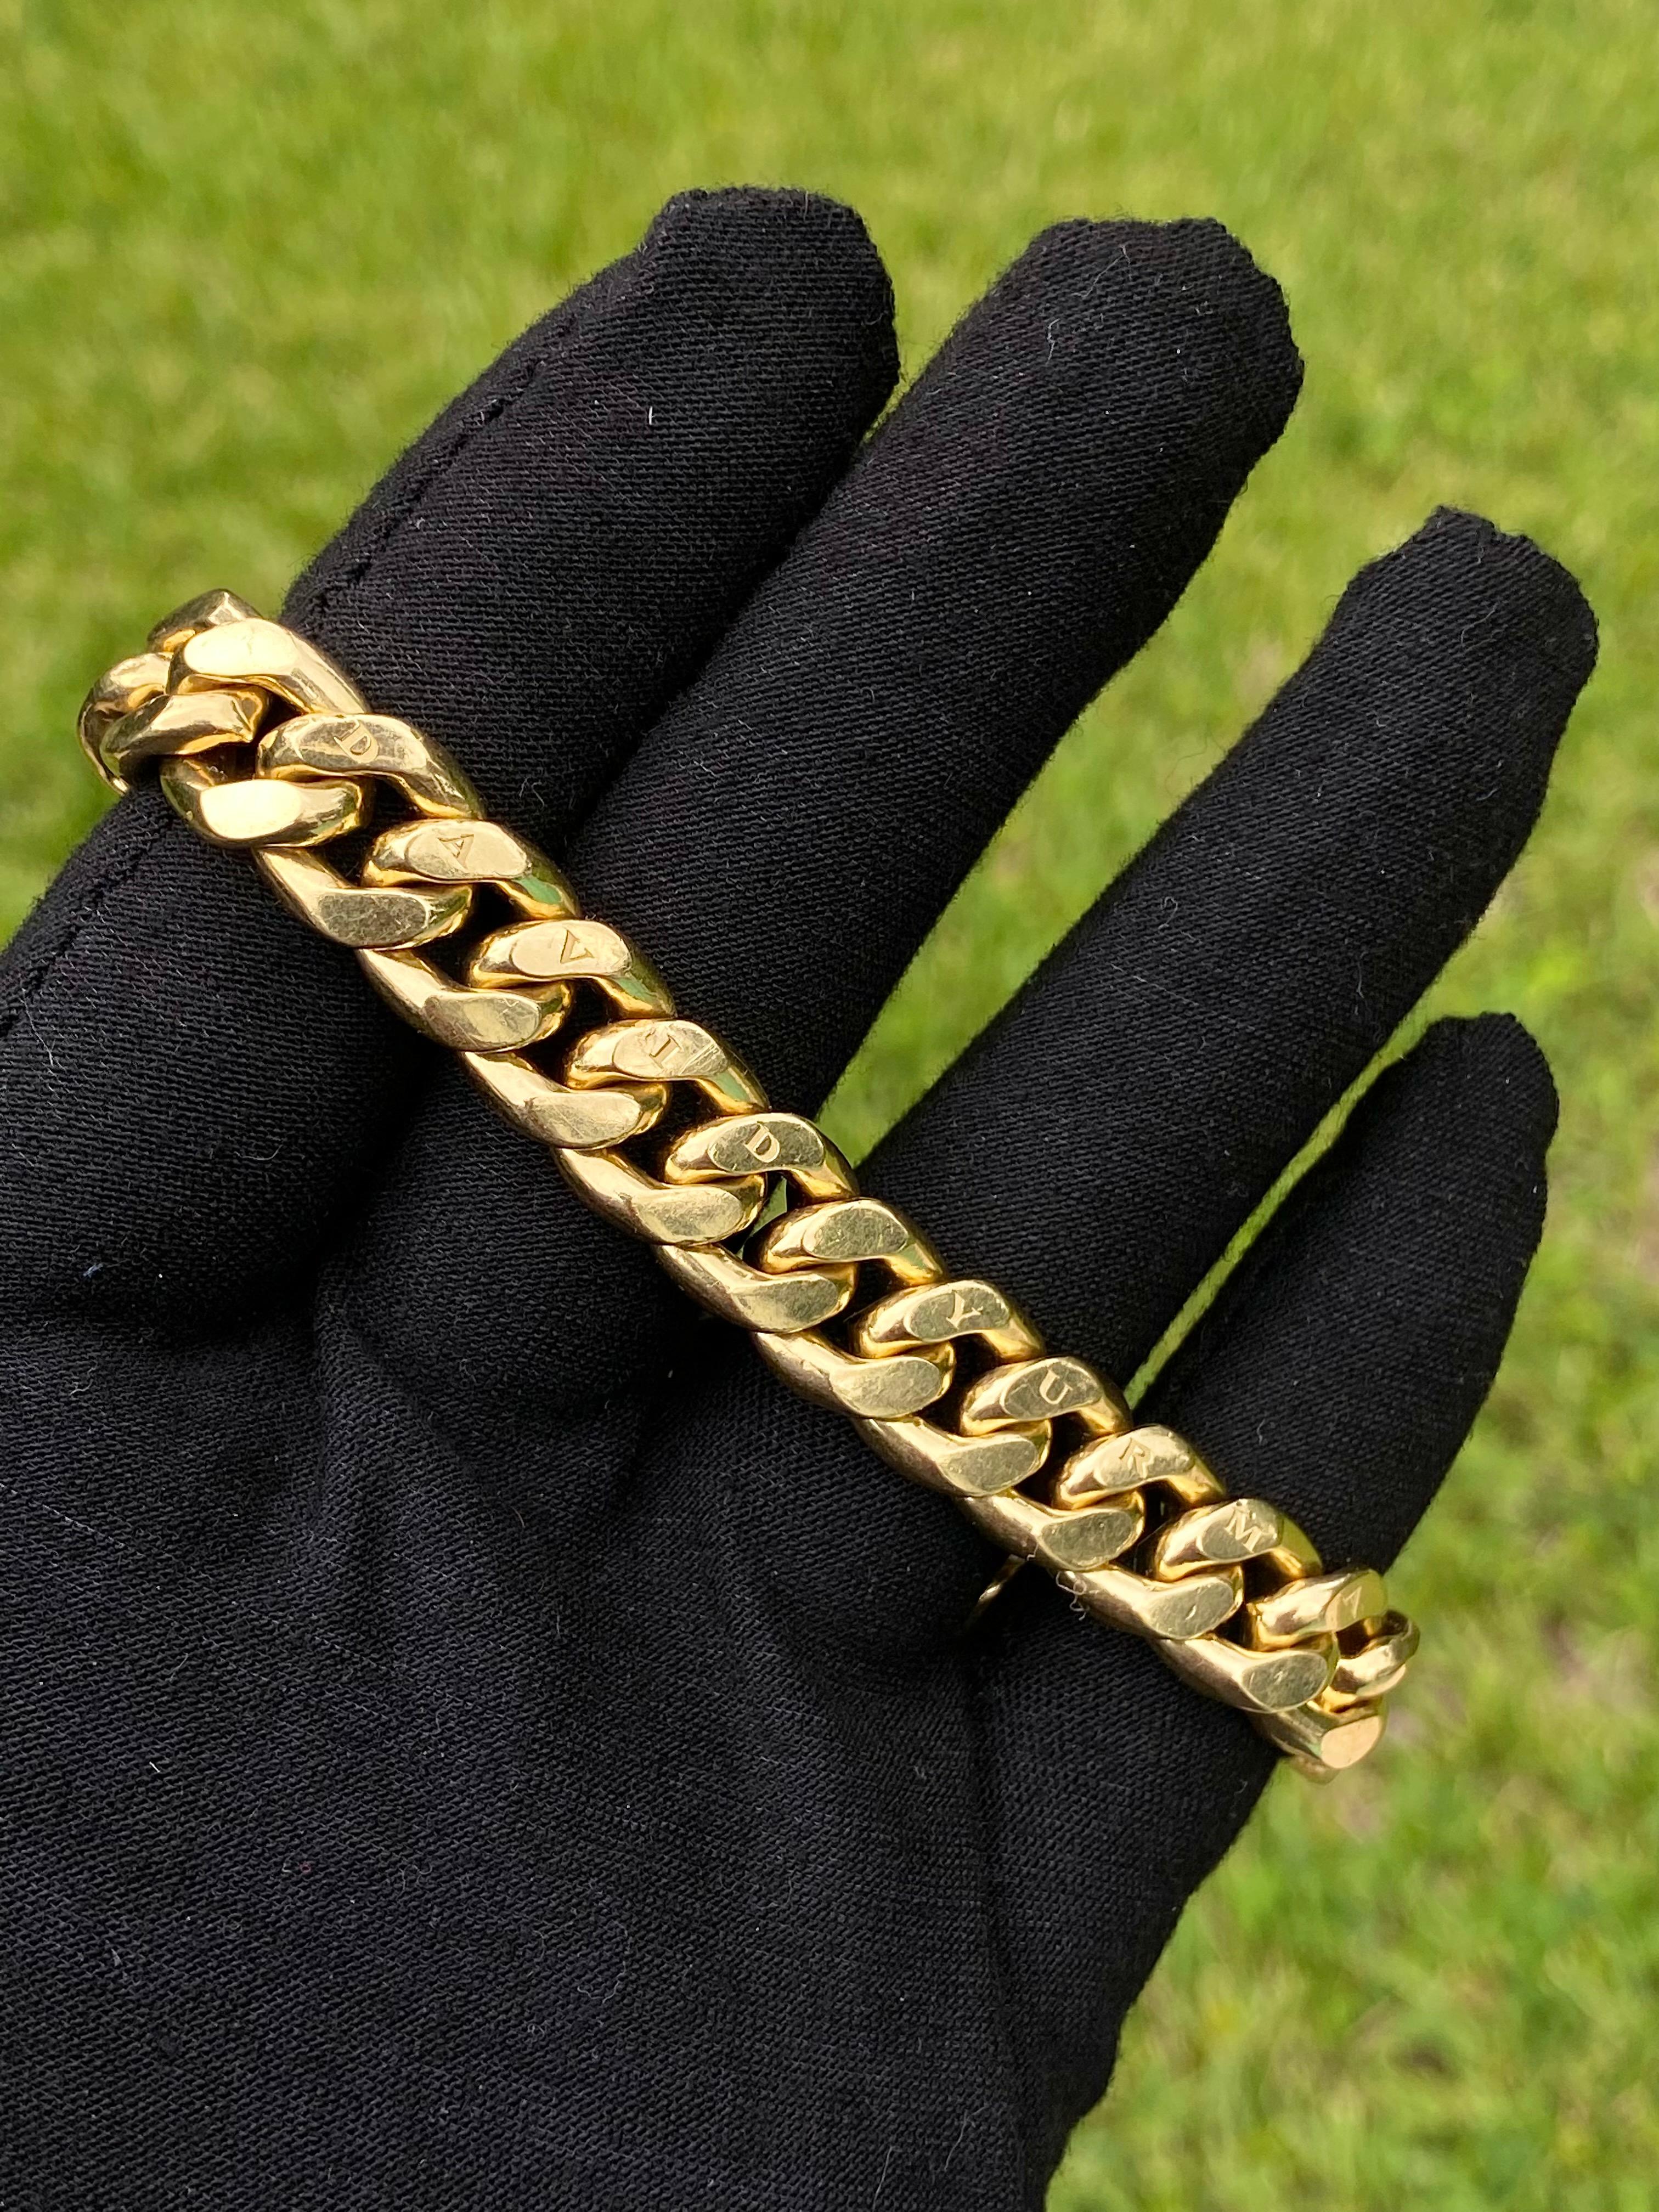 8 inch cuban link bracelet